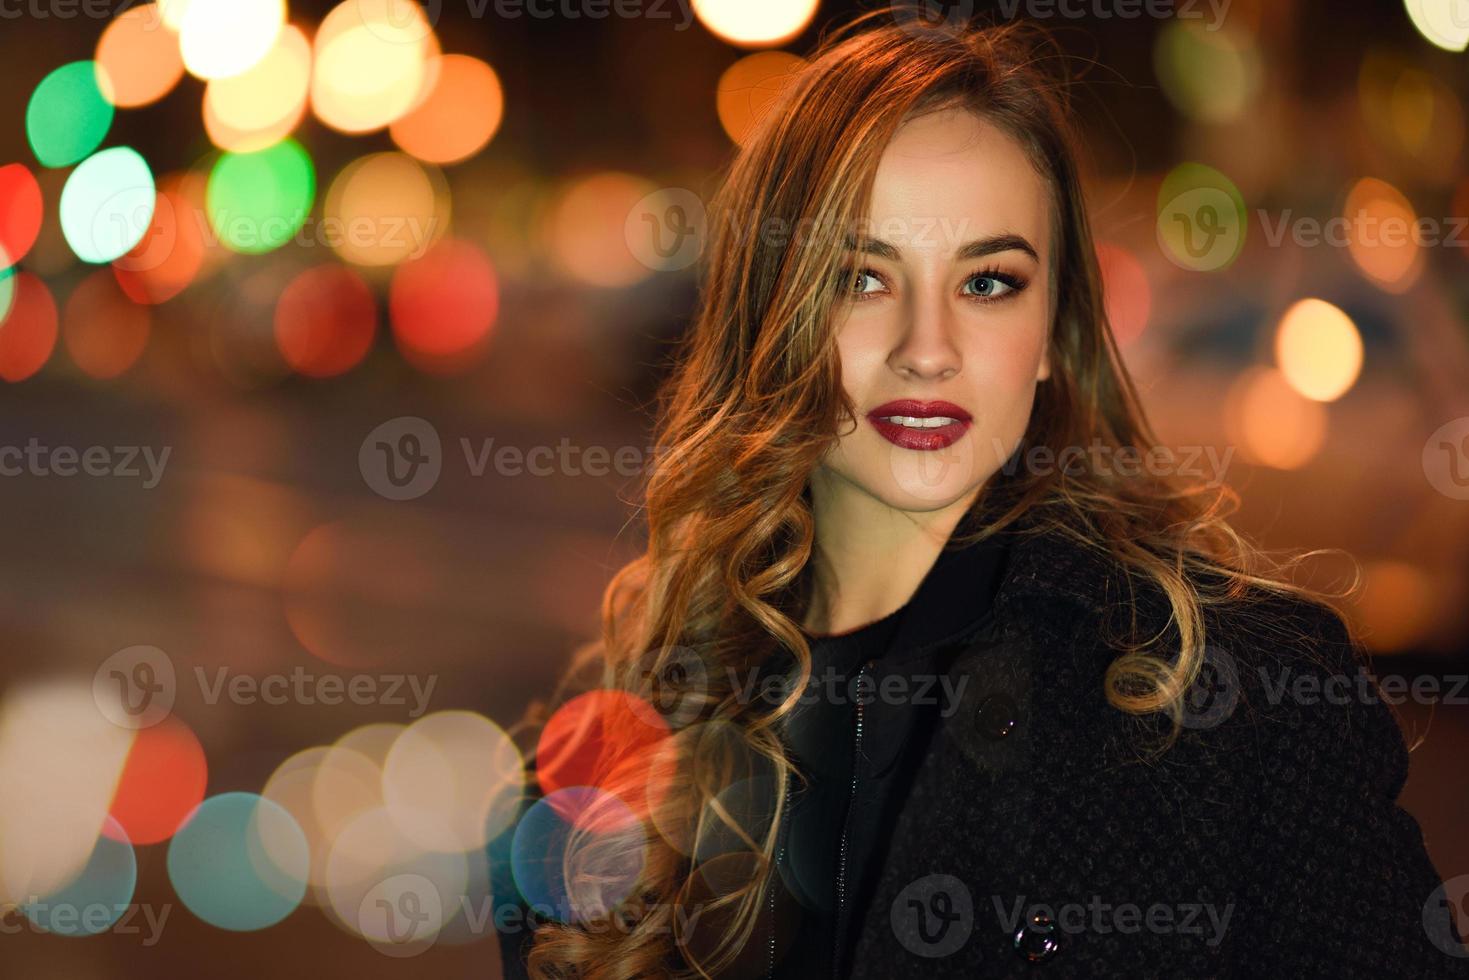 vrouw met zwarte jas op straat met onscherpe lichten foto